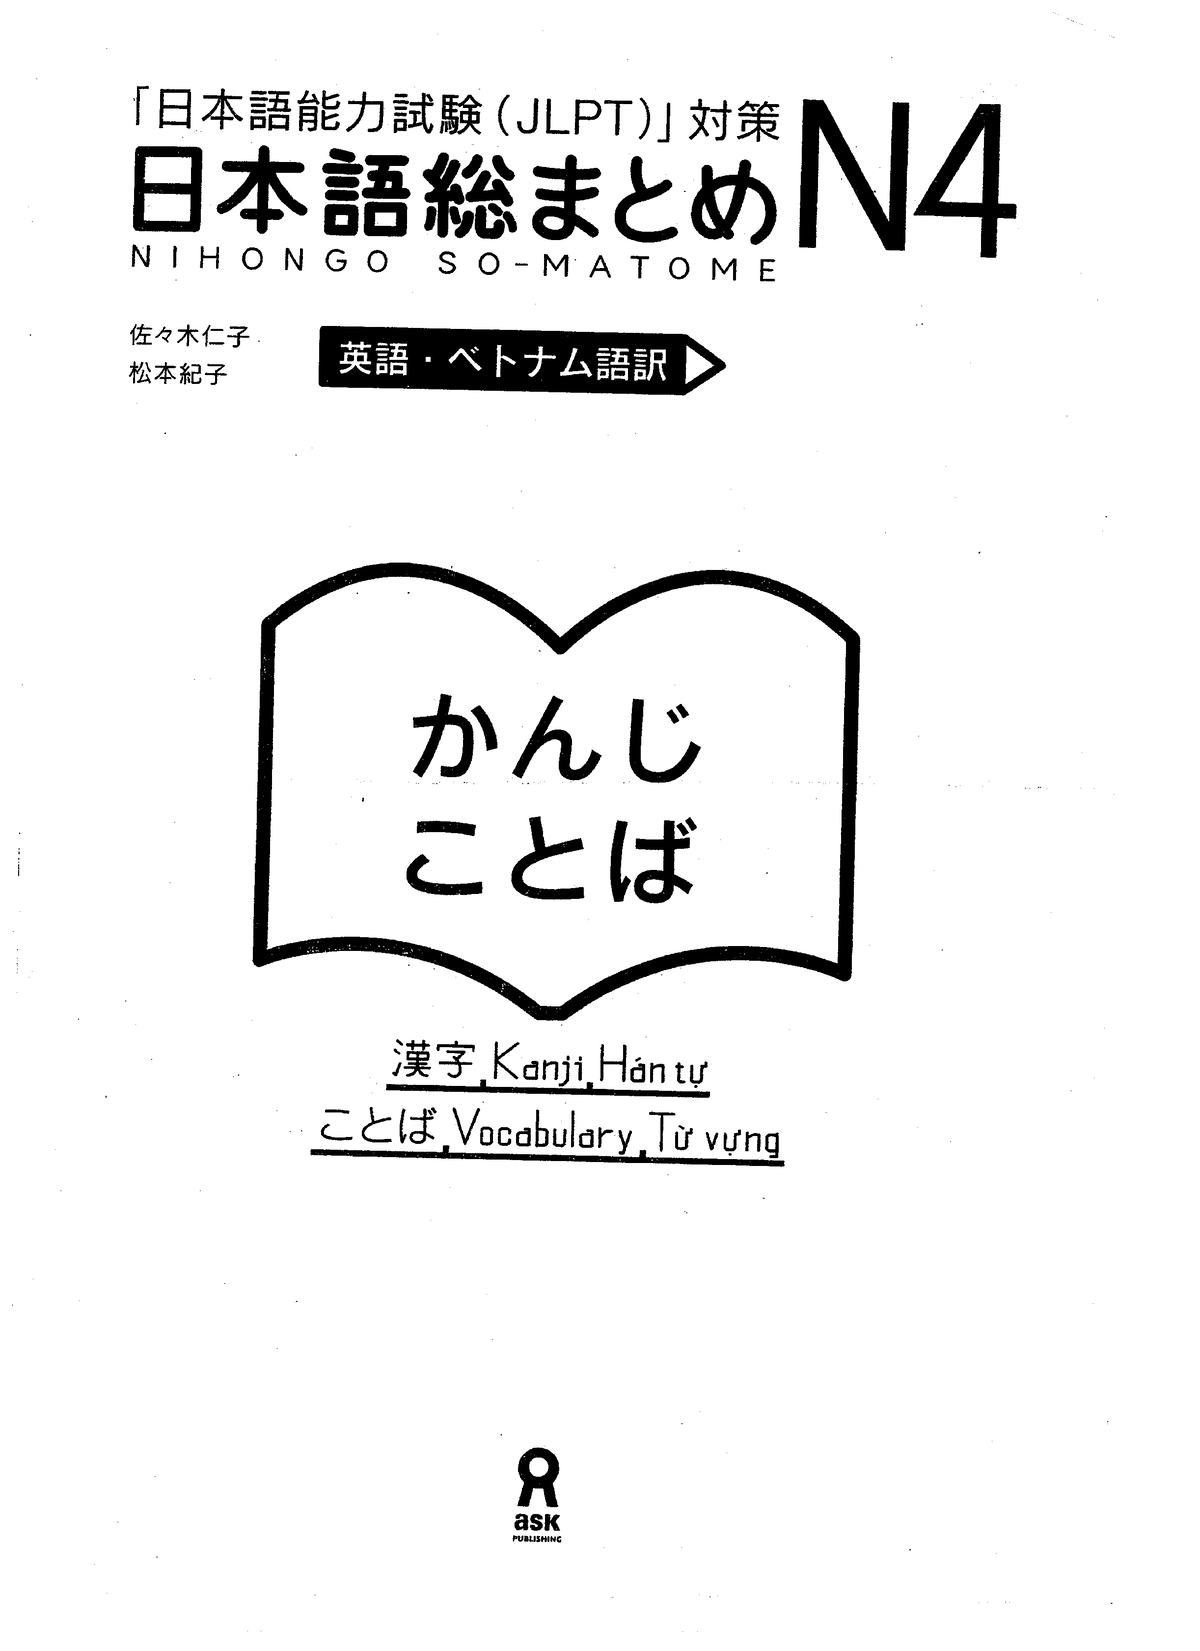 Khám phá từ vựng kanji n4 thông qua các ví dụ và hướng dẫn